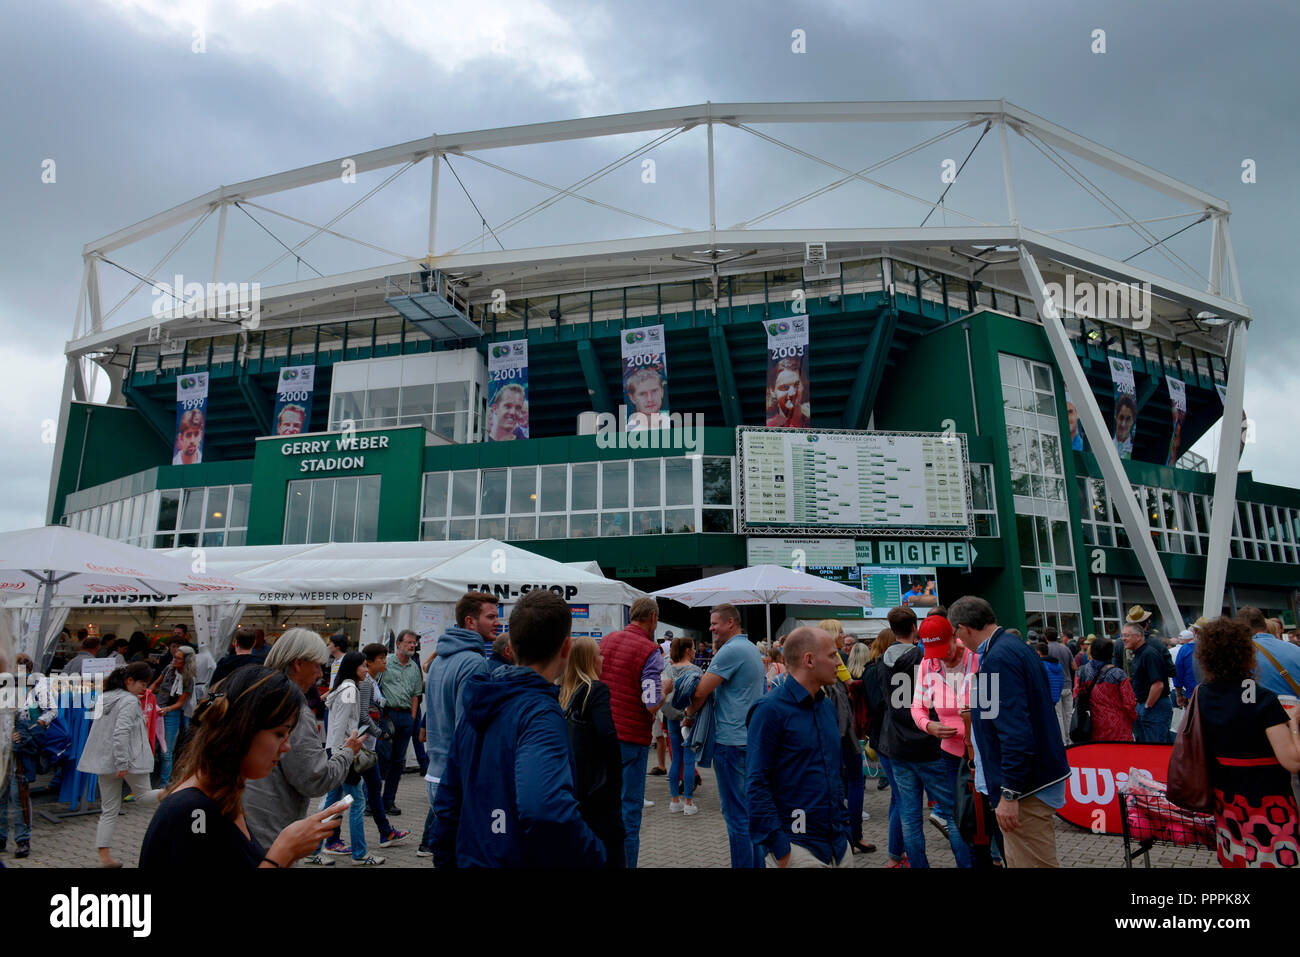 Gerry-Weber-Stadion, Roger-Federer-Allee, Halle, Sachsen-Anhalt, Deutschland Stockfoto